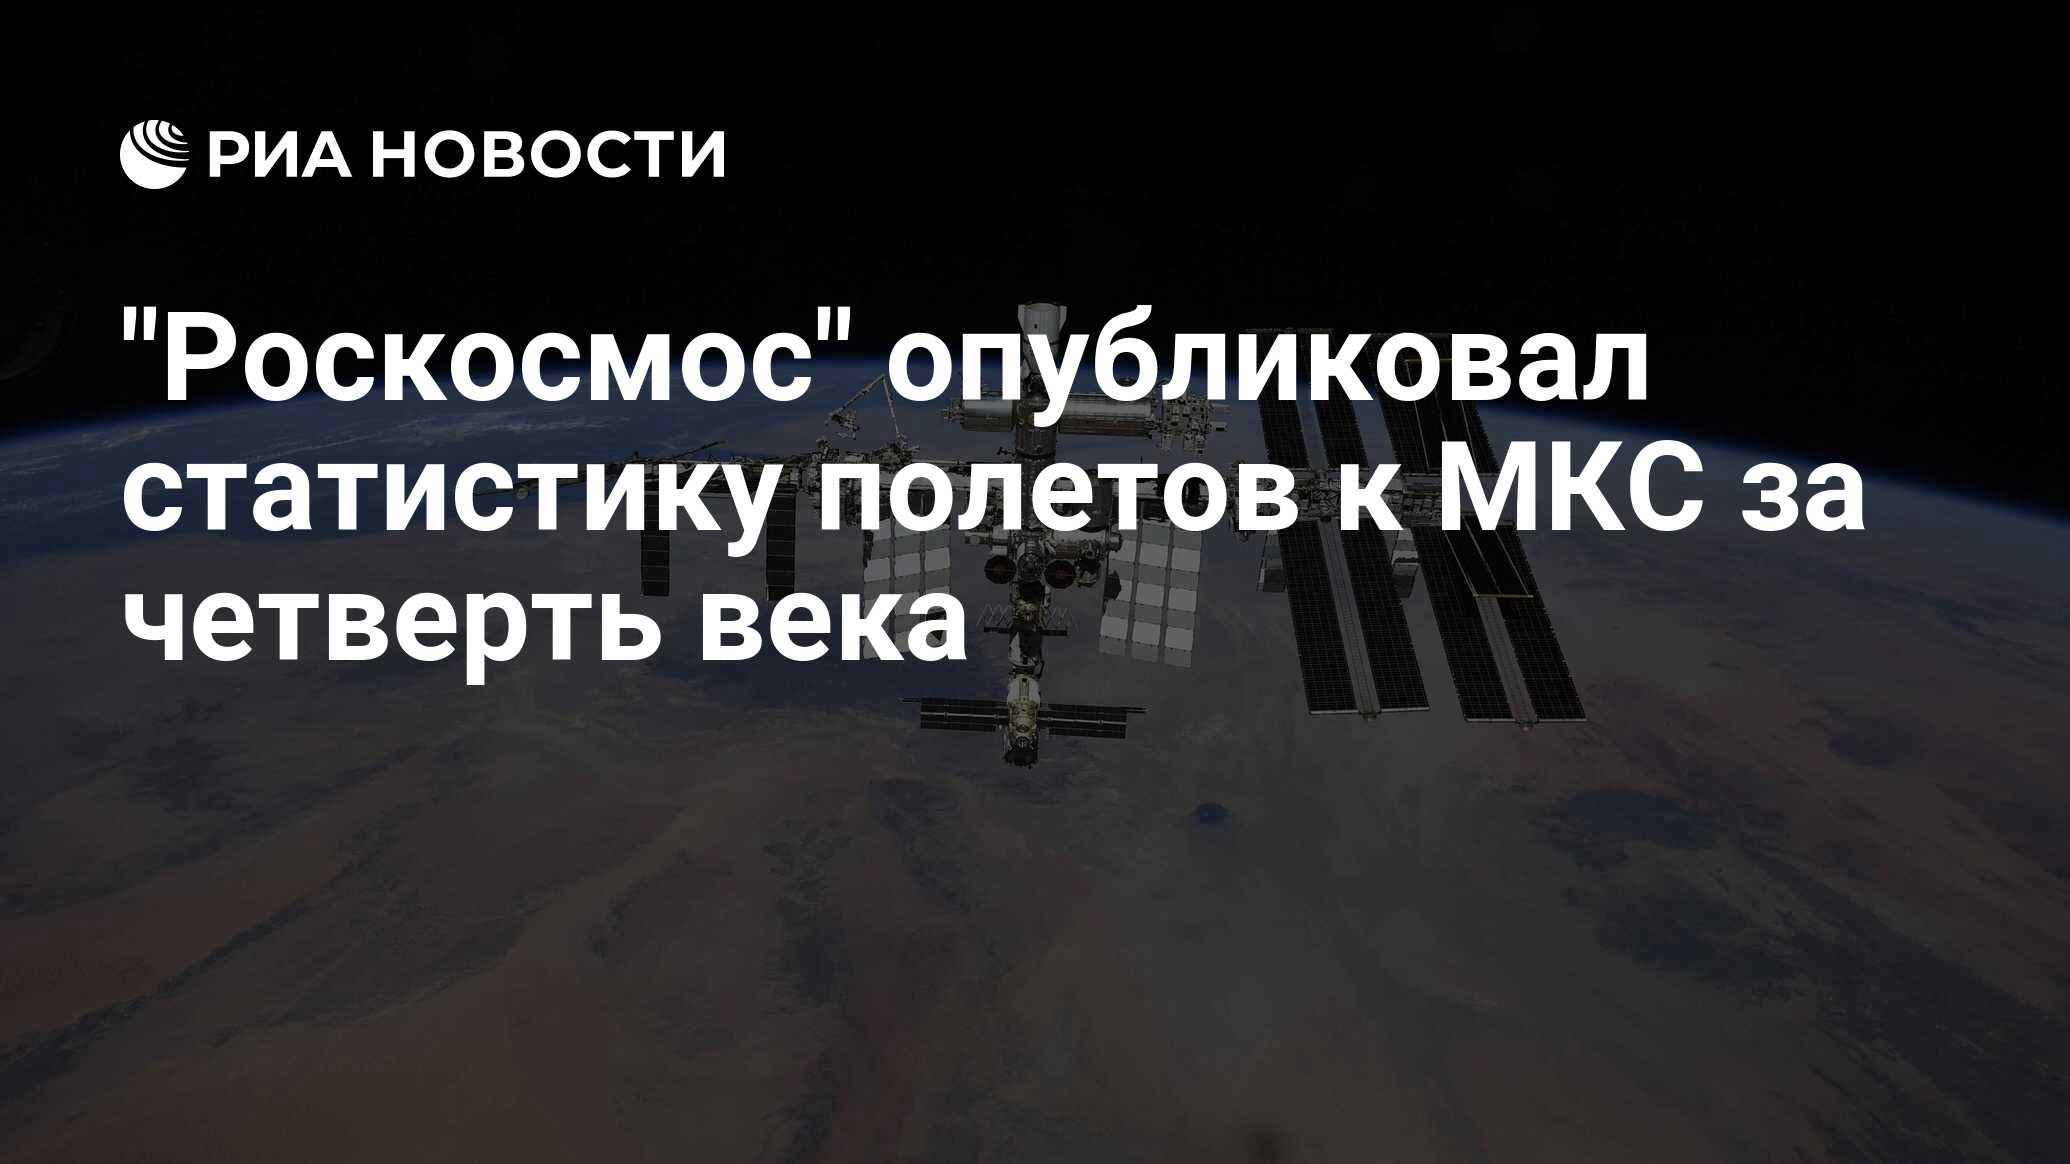 "Роскосмос" опубликовал статистику полетов к МКС за четверть века